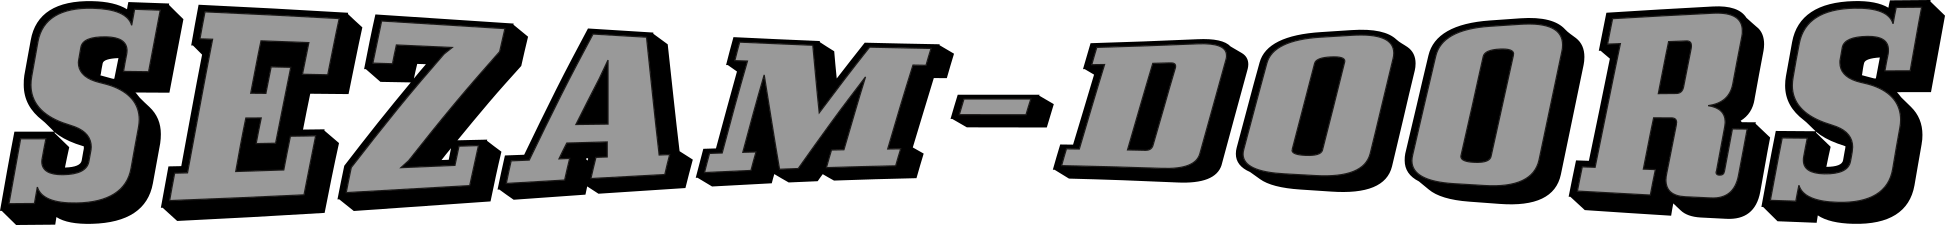 sezam-doors logo